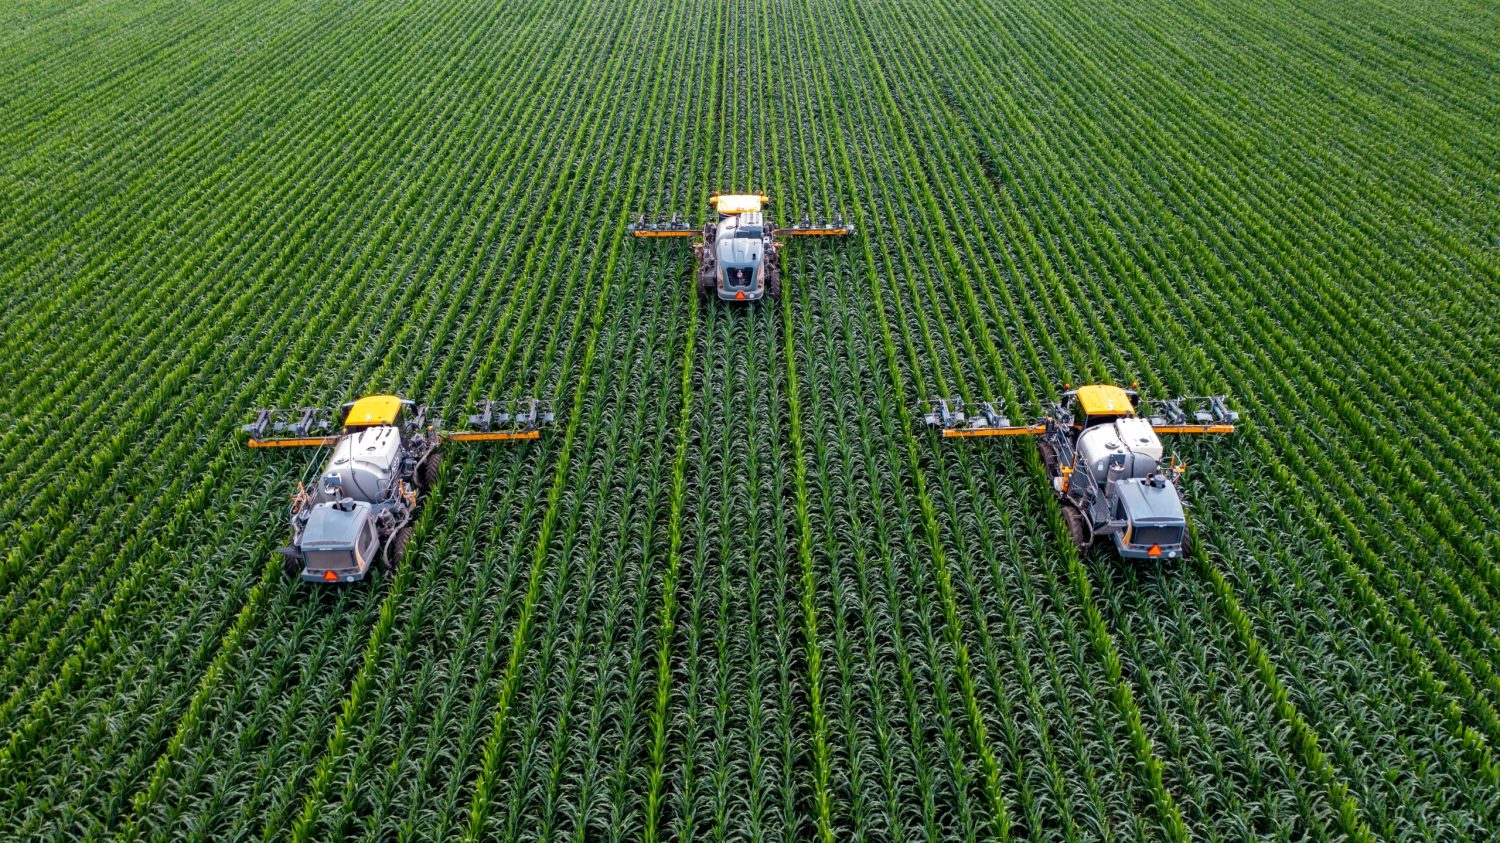 Fleet of tractors harvesting crops